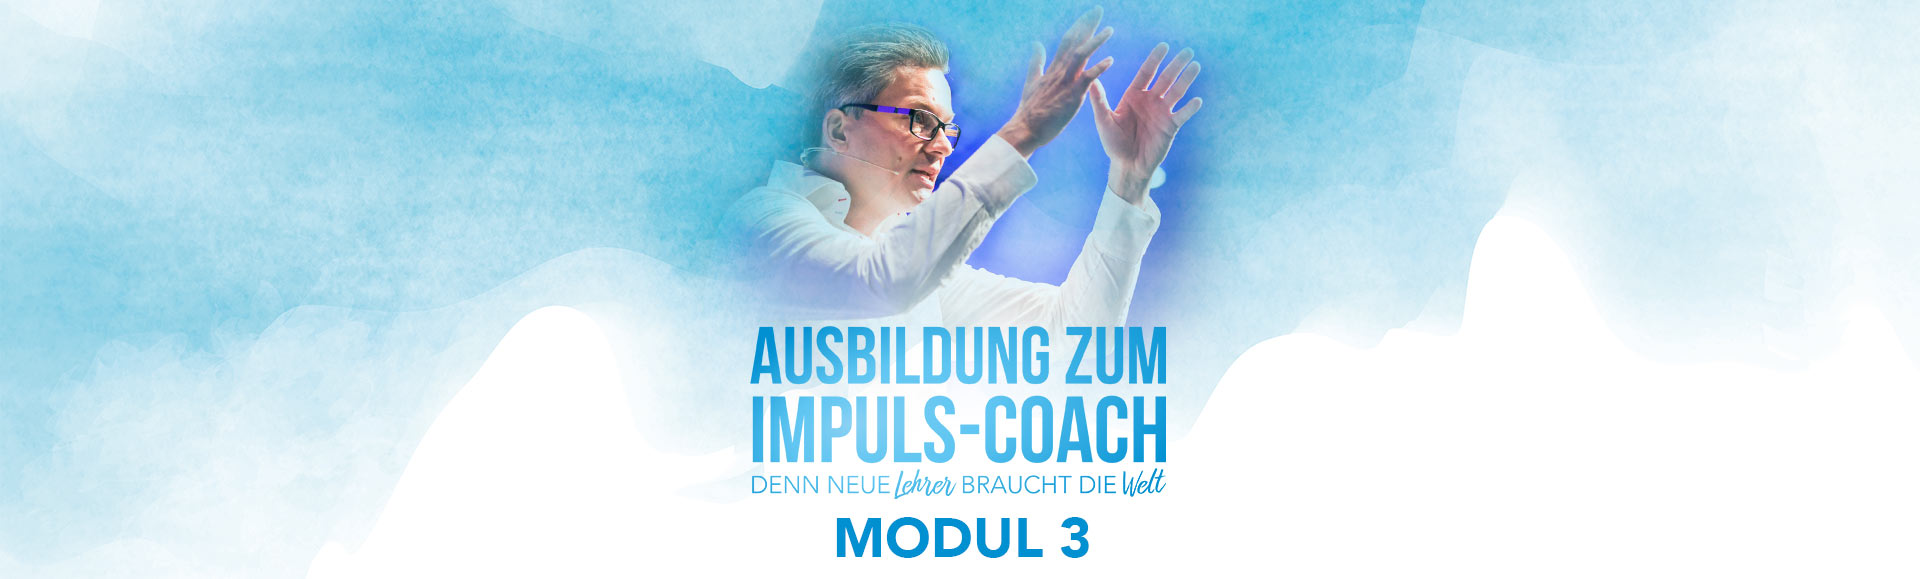 Coaching-Ausbildung_Modul3_Damian-Richter